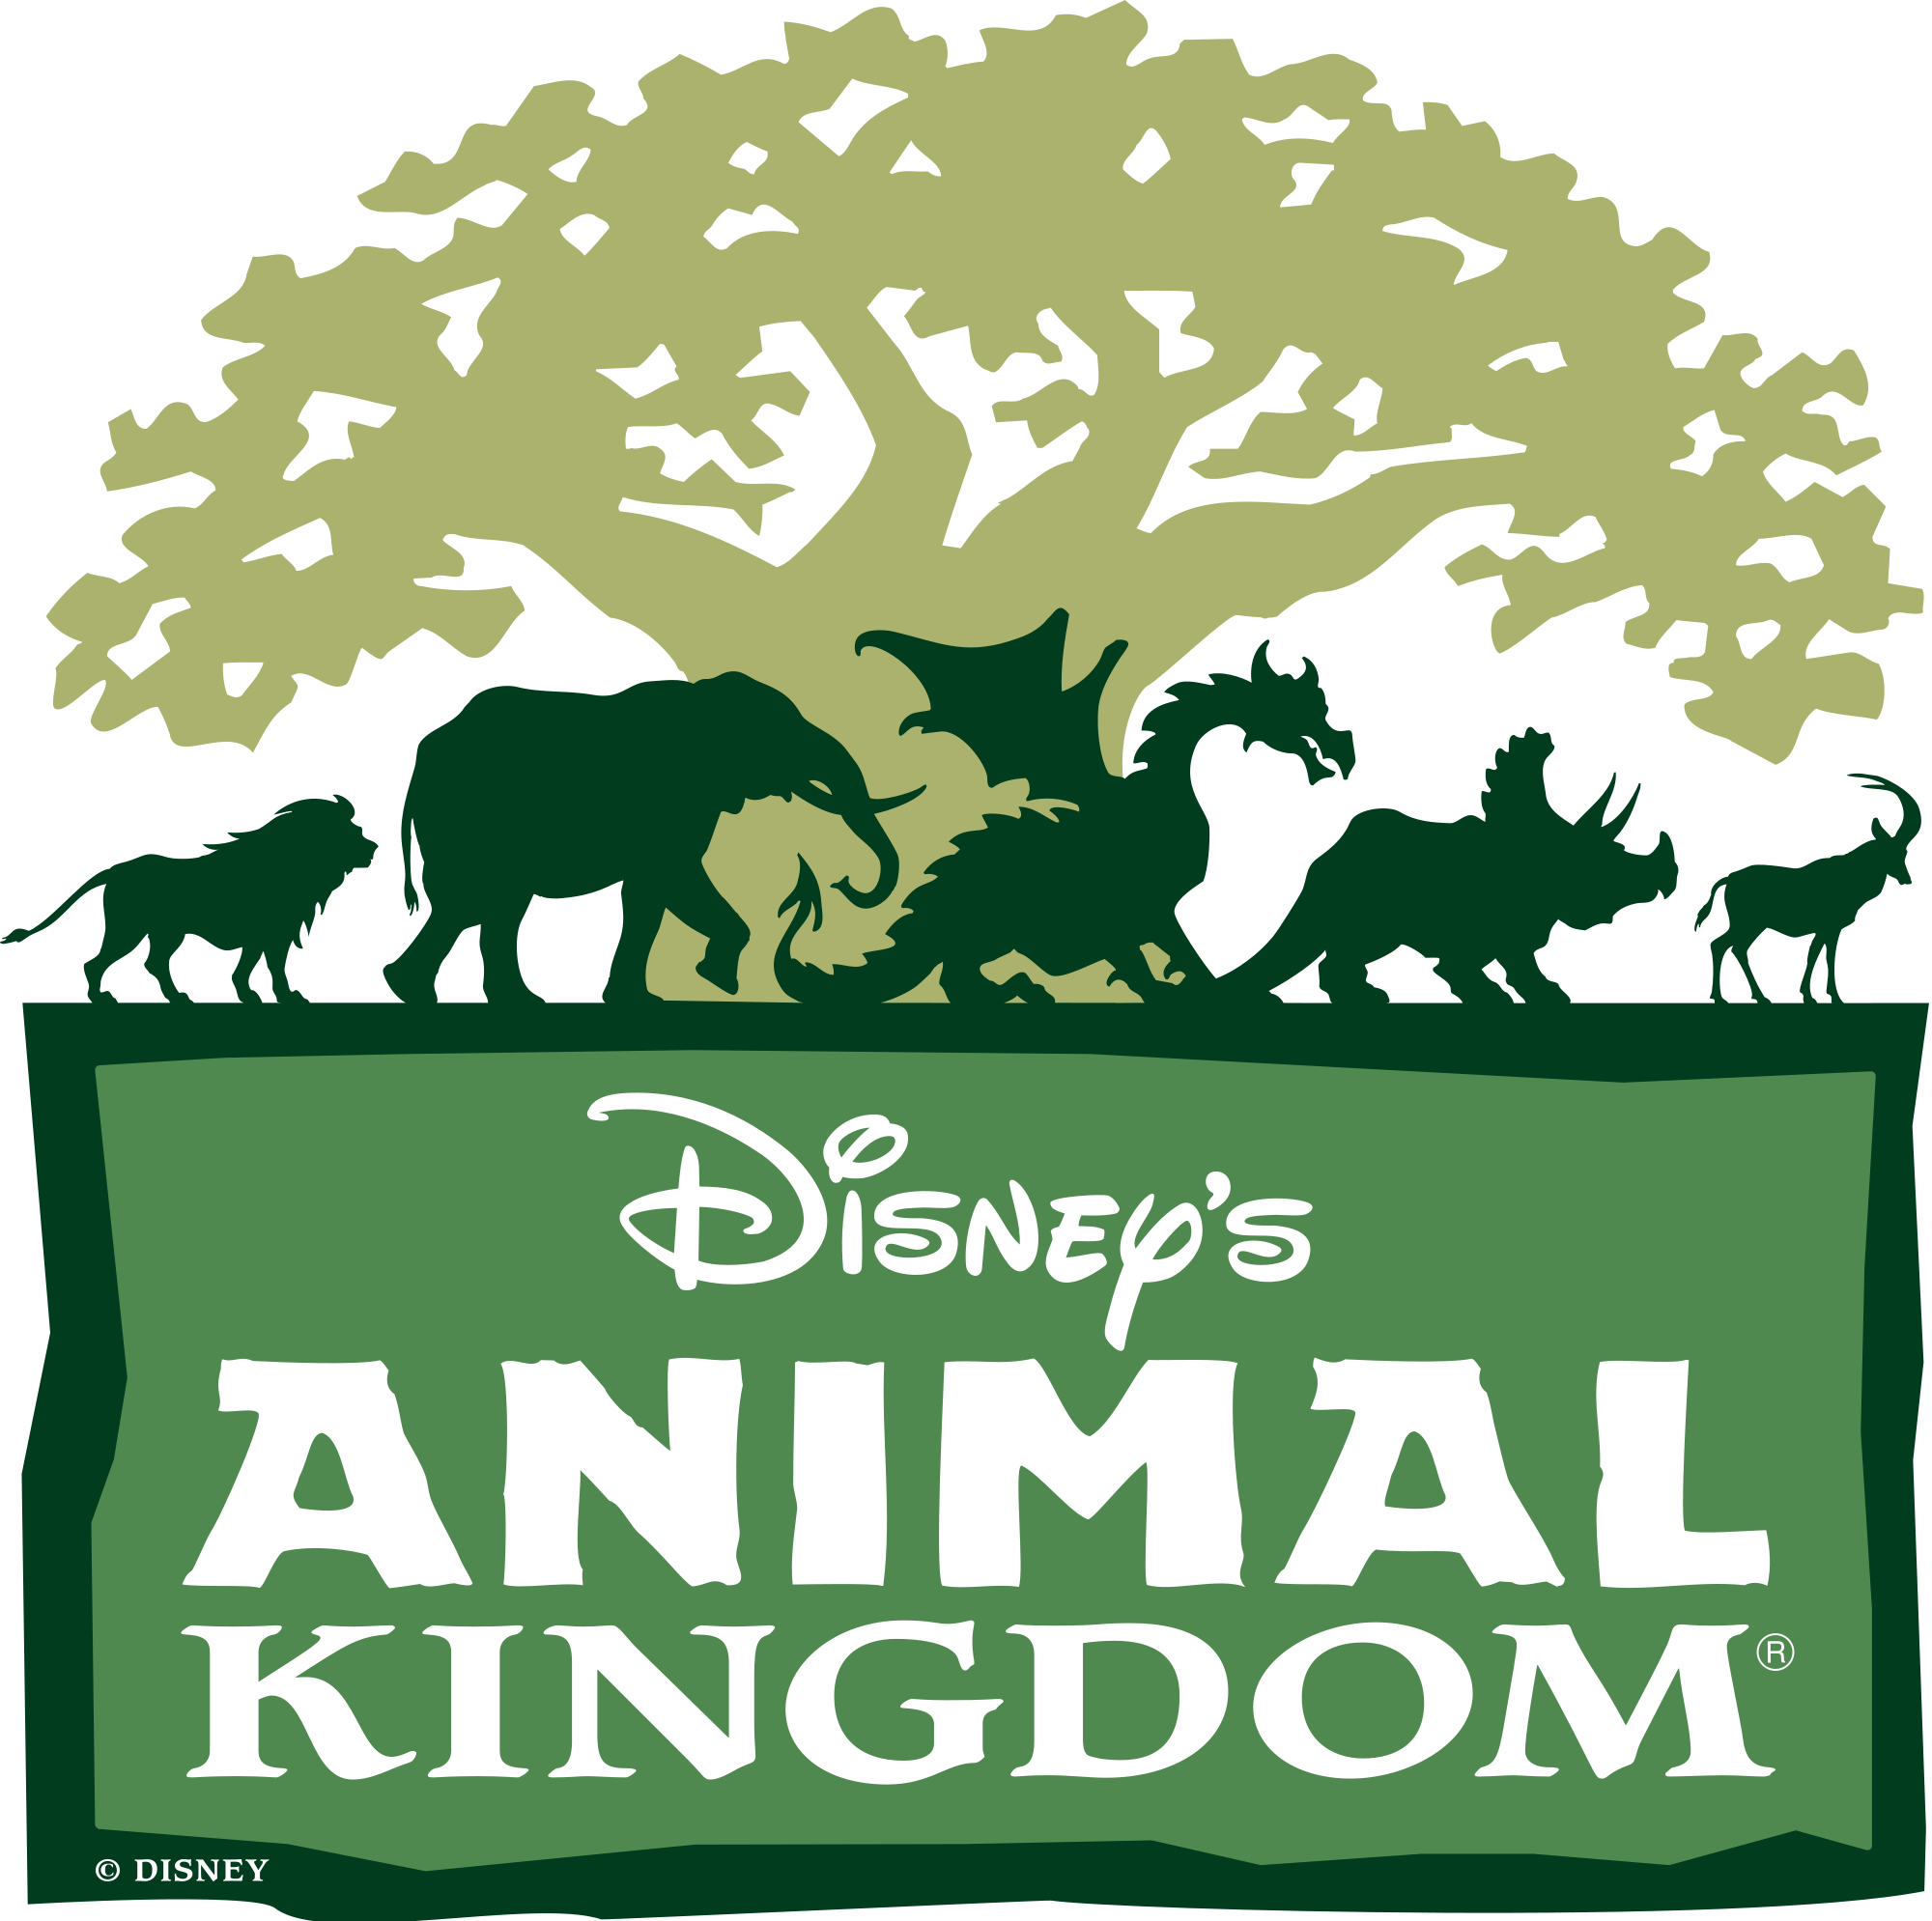 Disney's Animal Kingdom | Disney Wiki | FANDOM powered by Wikia